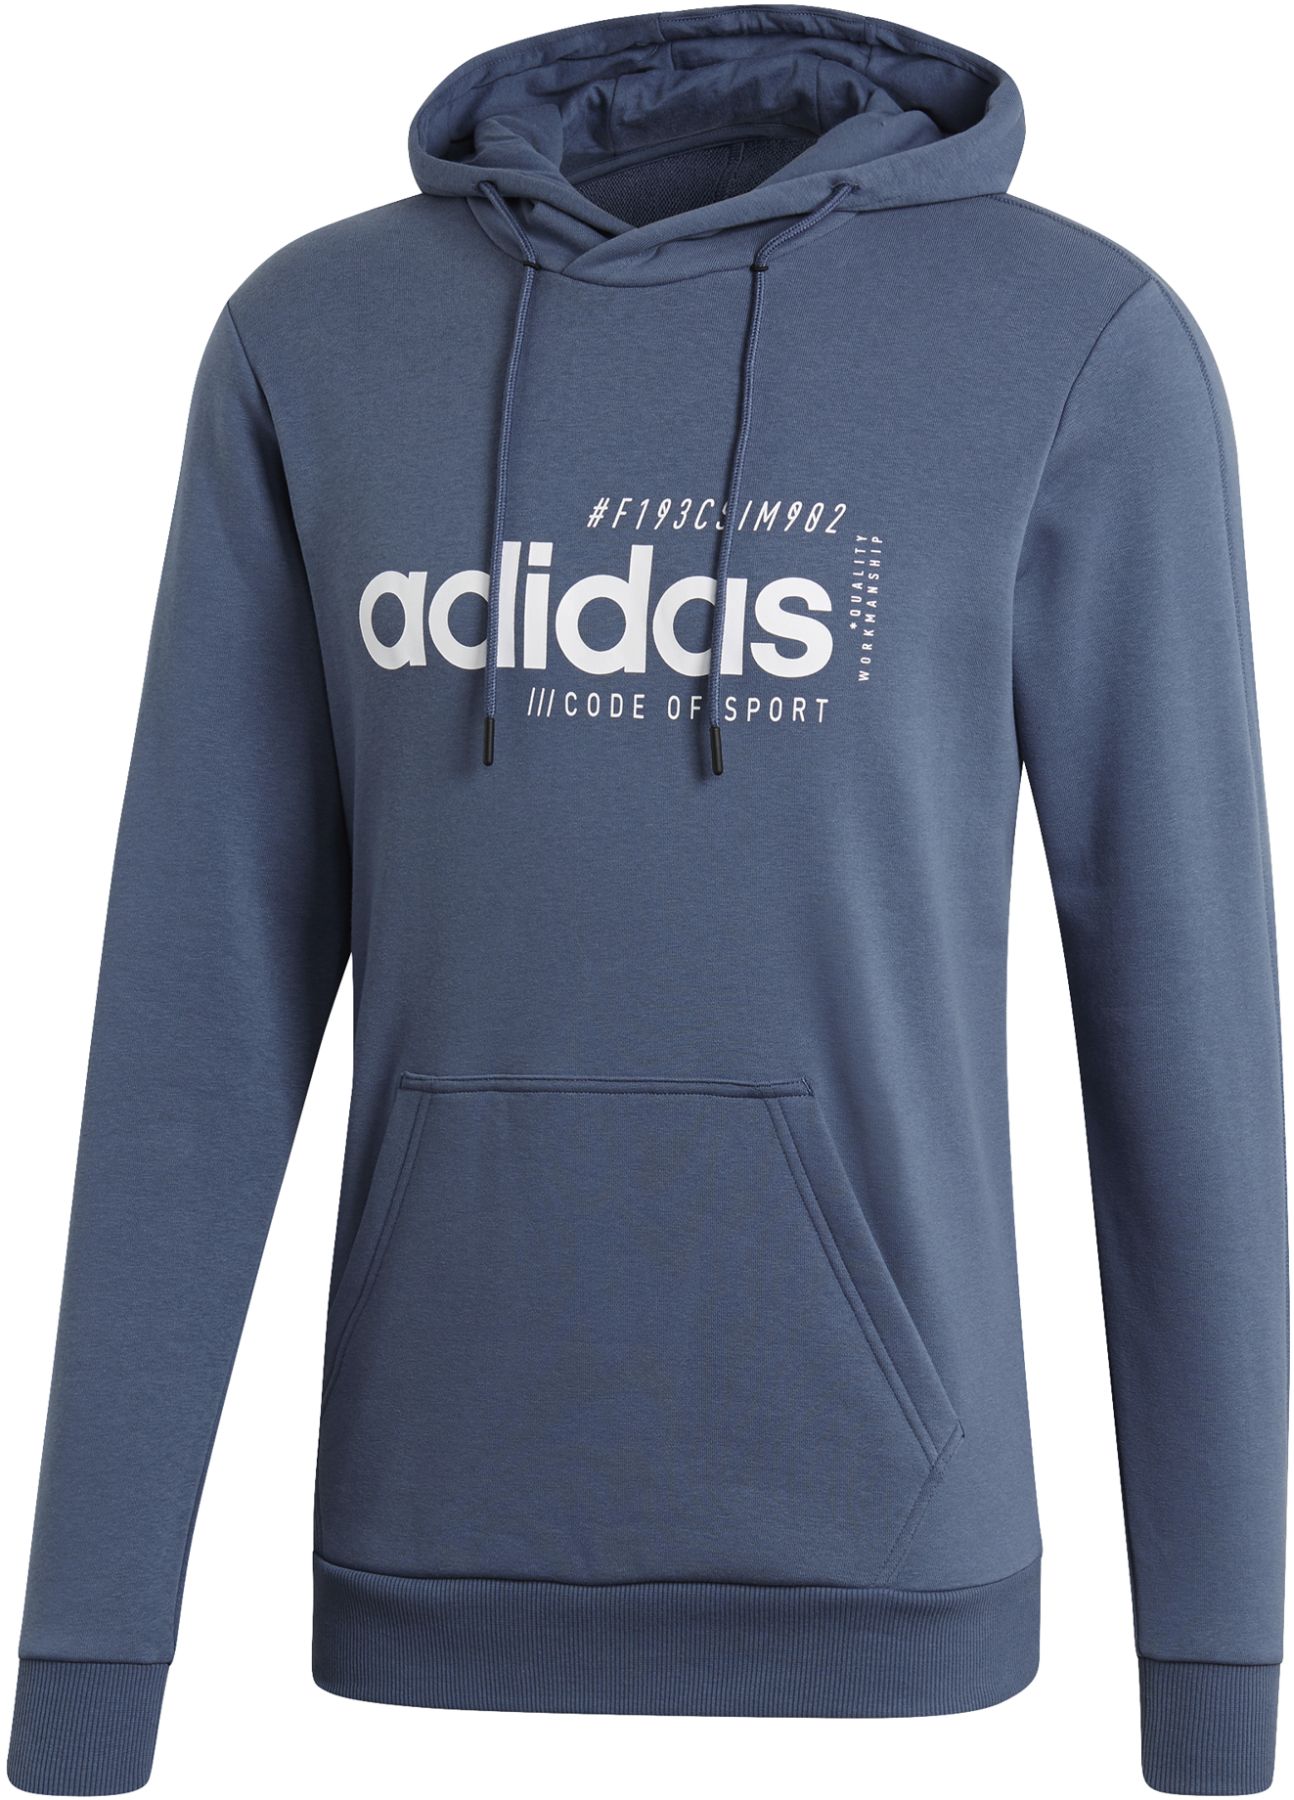 adidas code of sport hoodie